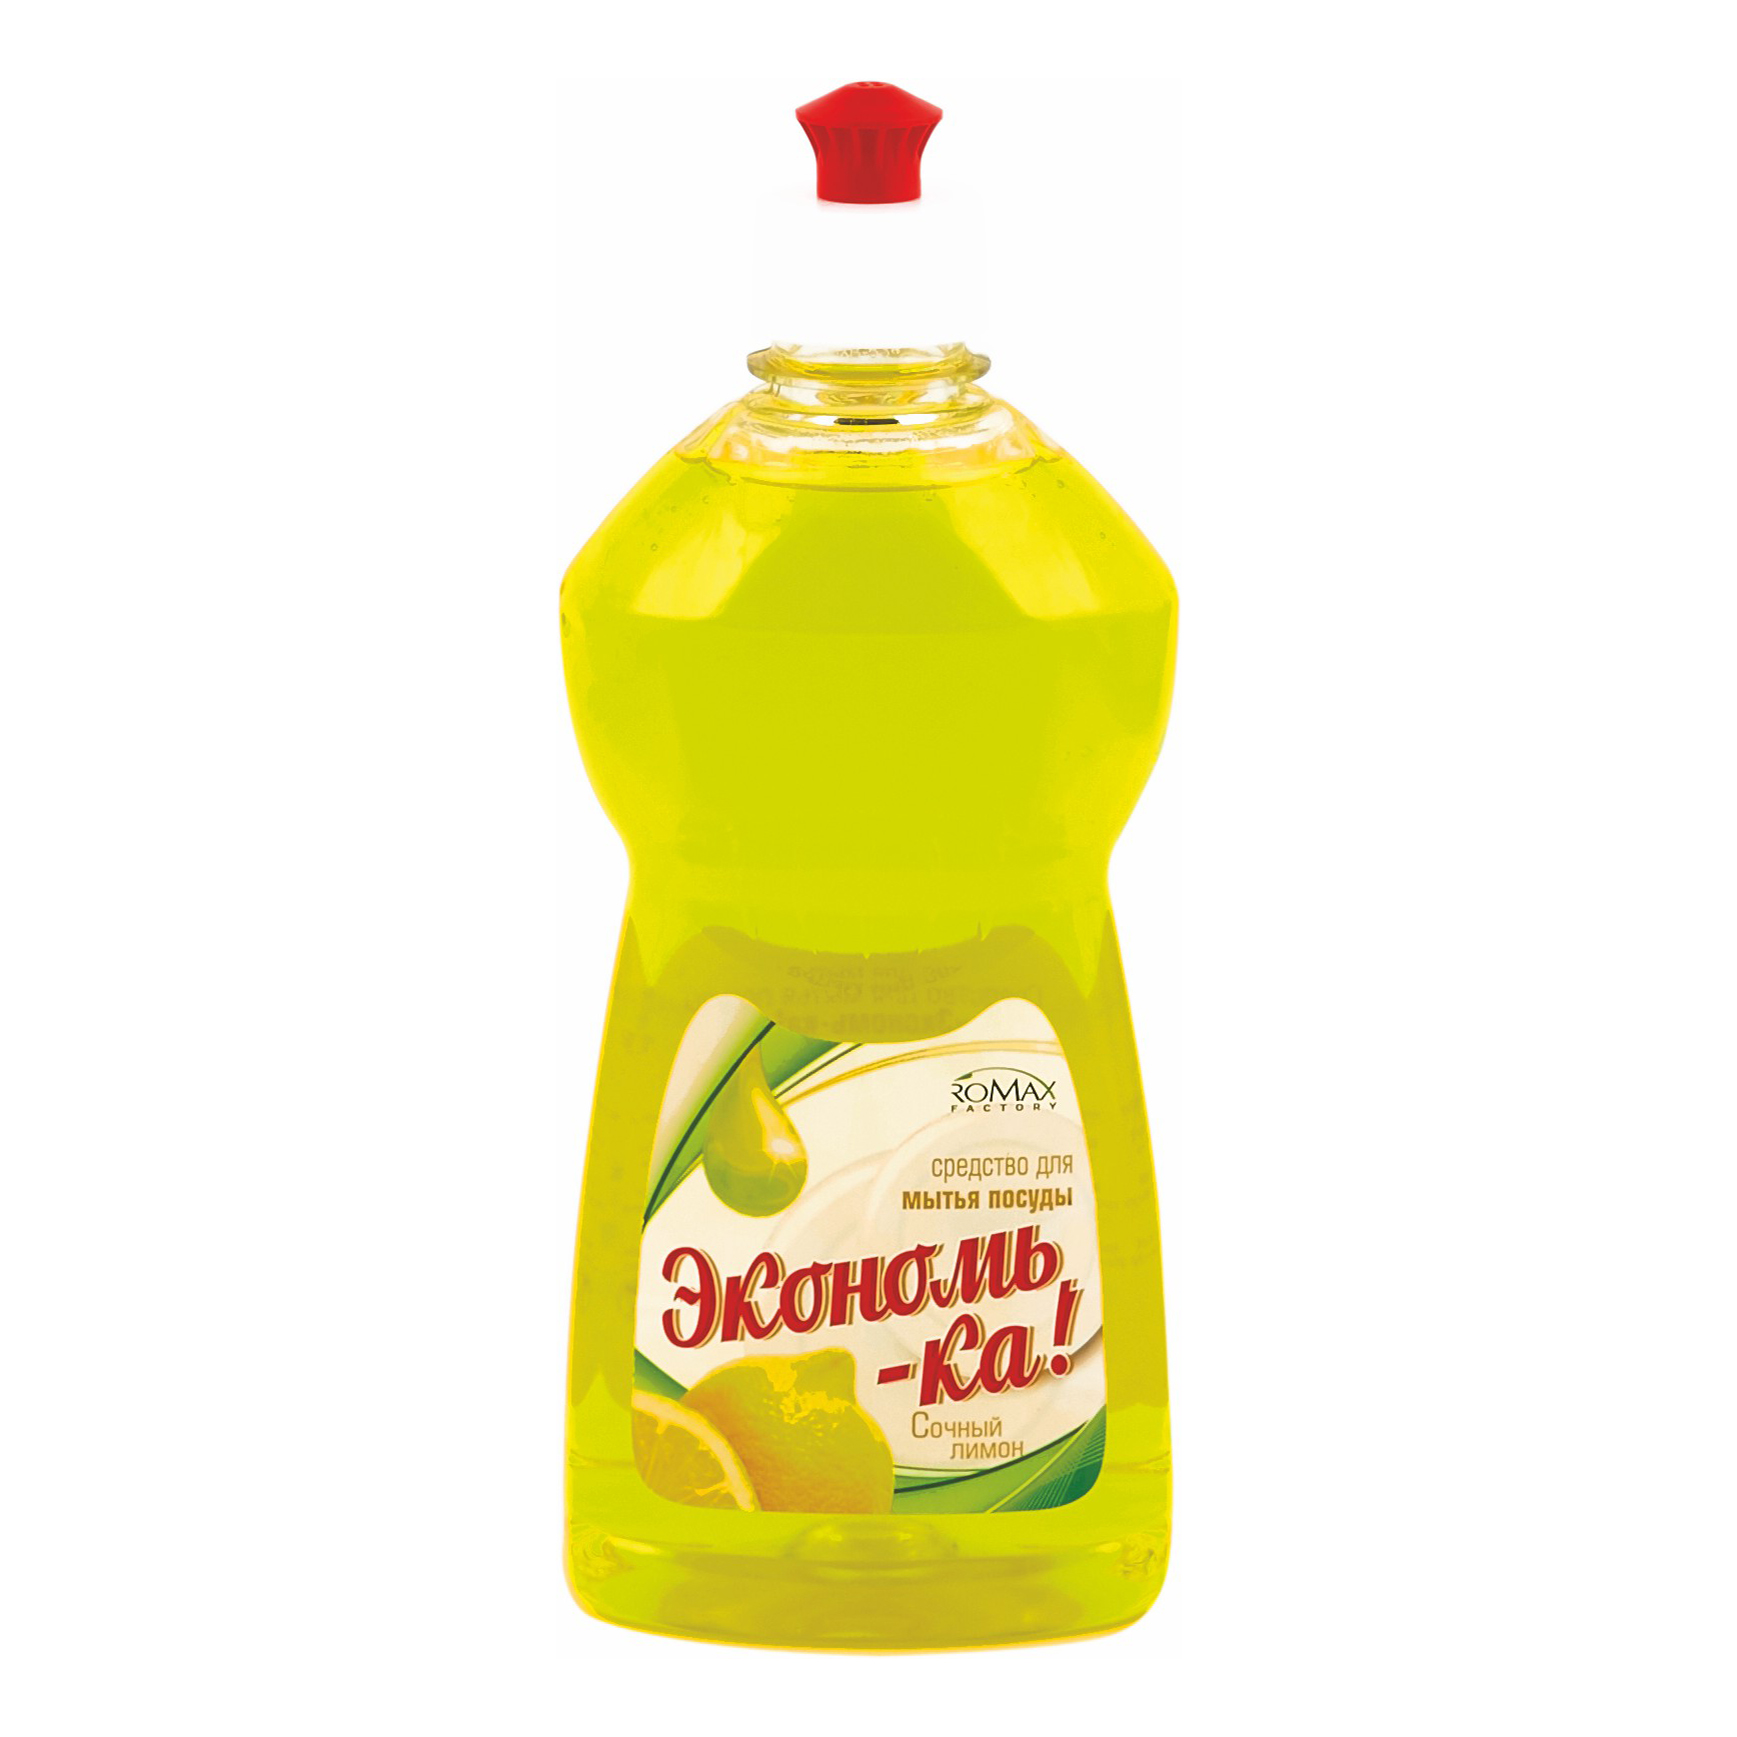 Жидкость Romax Экономь-Ка для мытья посуды Сочный лимон 500 г